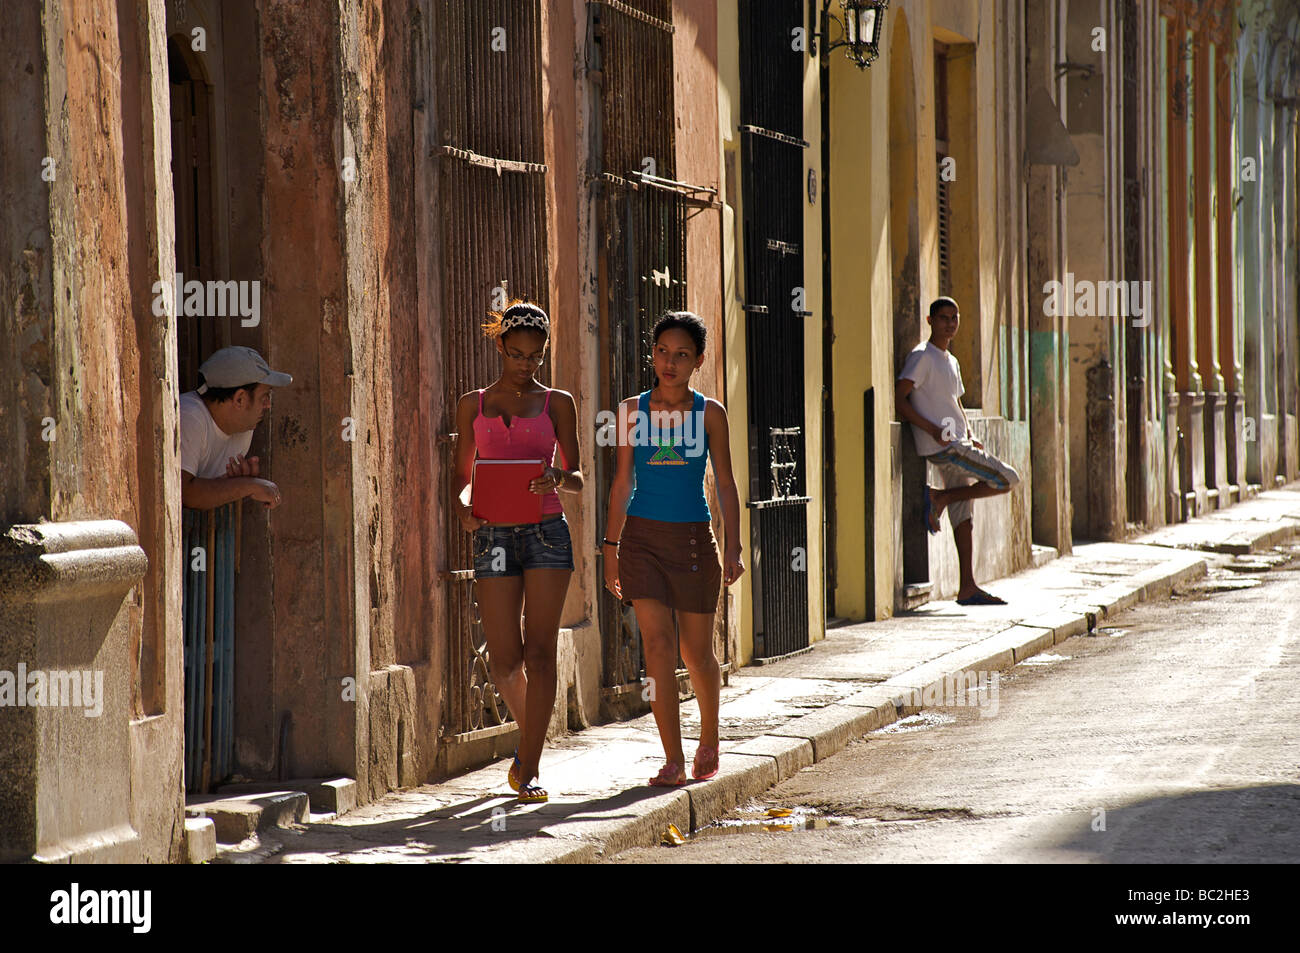 Kubanische Straßenszene. Beobachten das bunte Treiben ist ein beliebter Zeitvertreib in Havanna. Havanna, Kuba Stockfoto